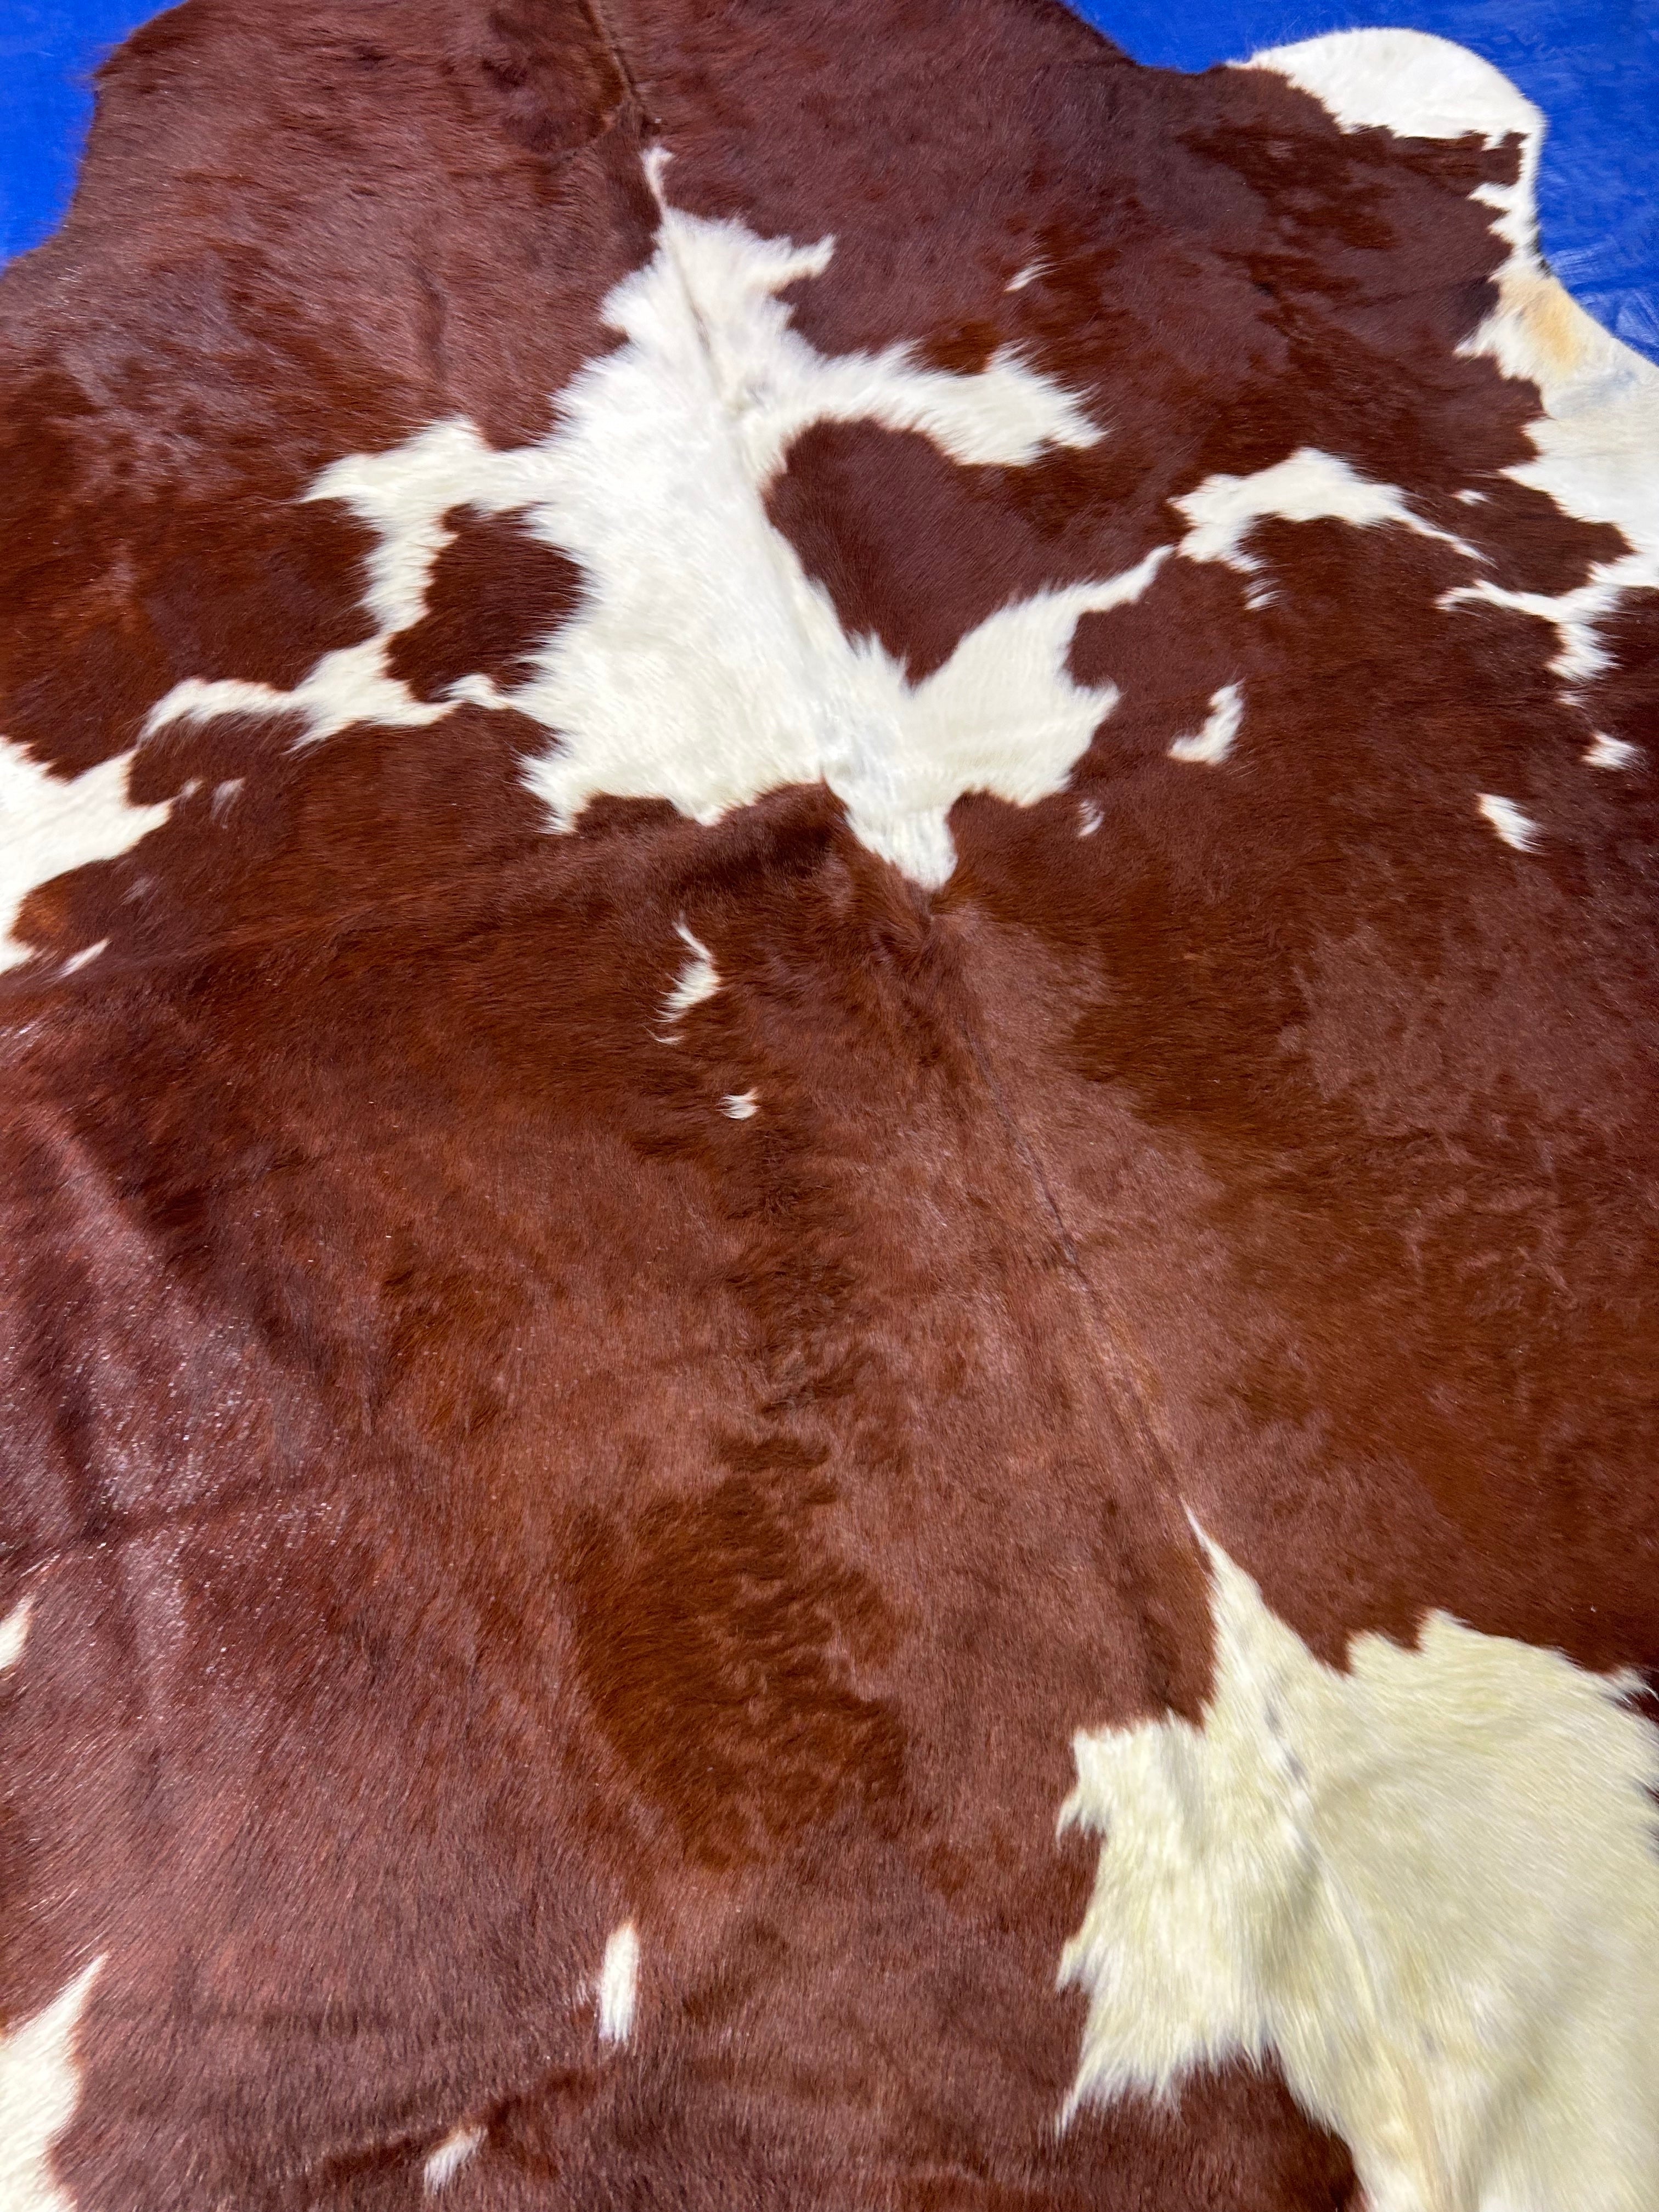 Brown & White Cowhide Rug Size: 6.2x5.7 feet M-1634